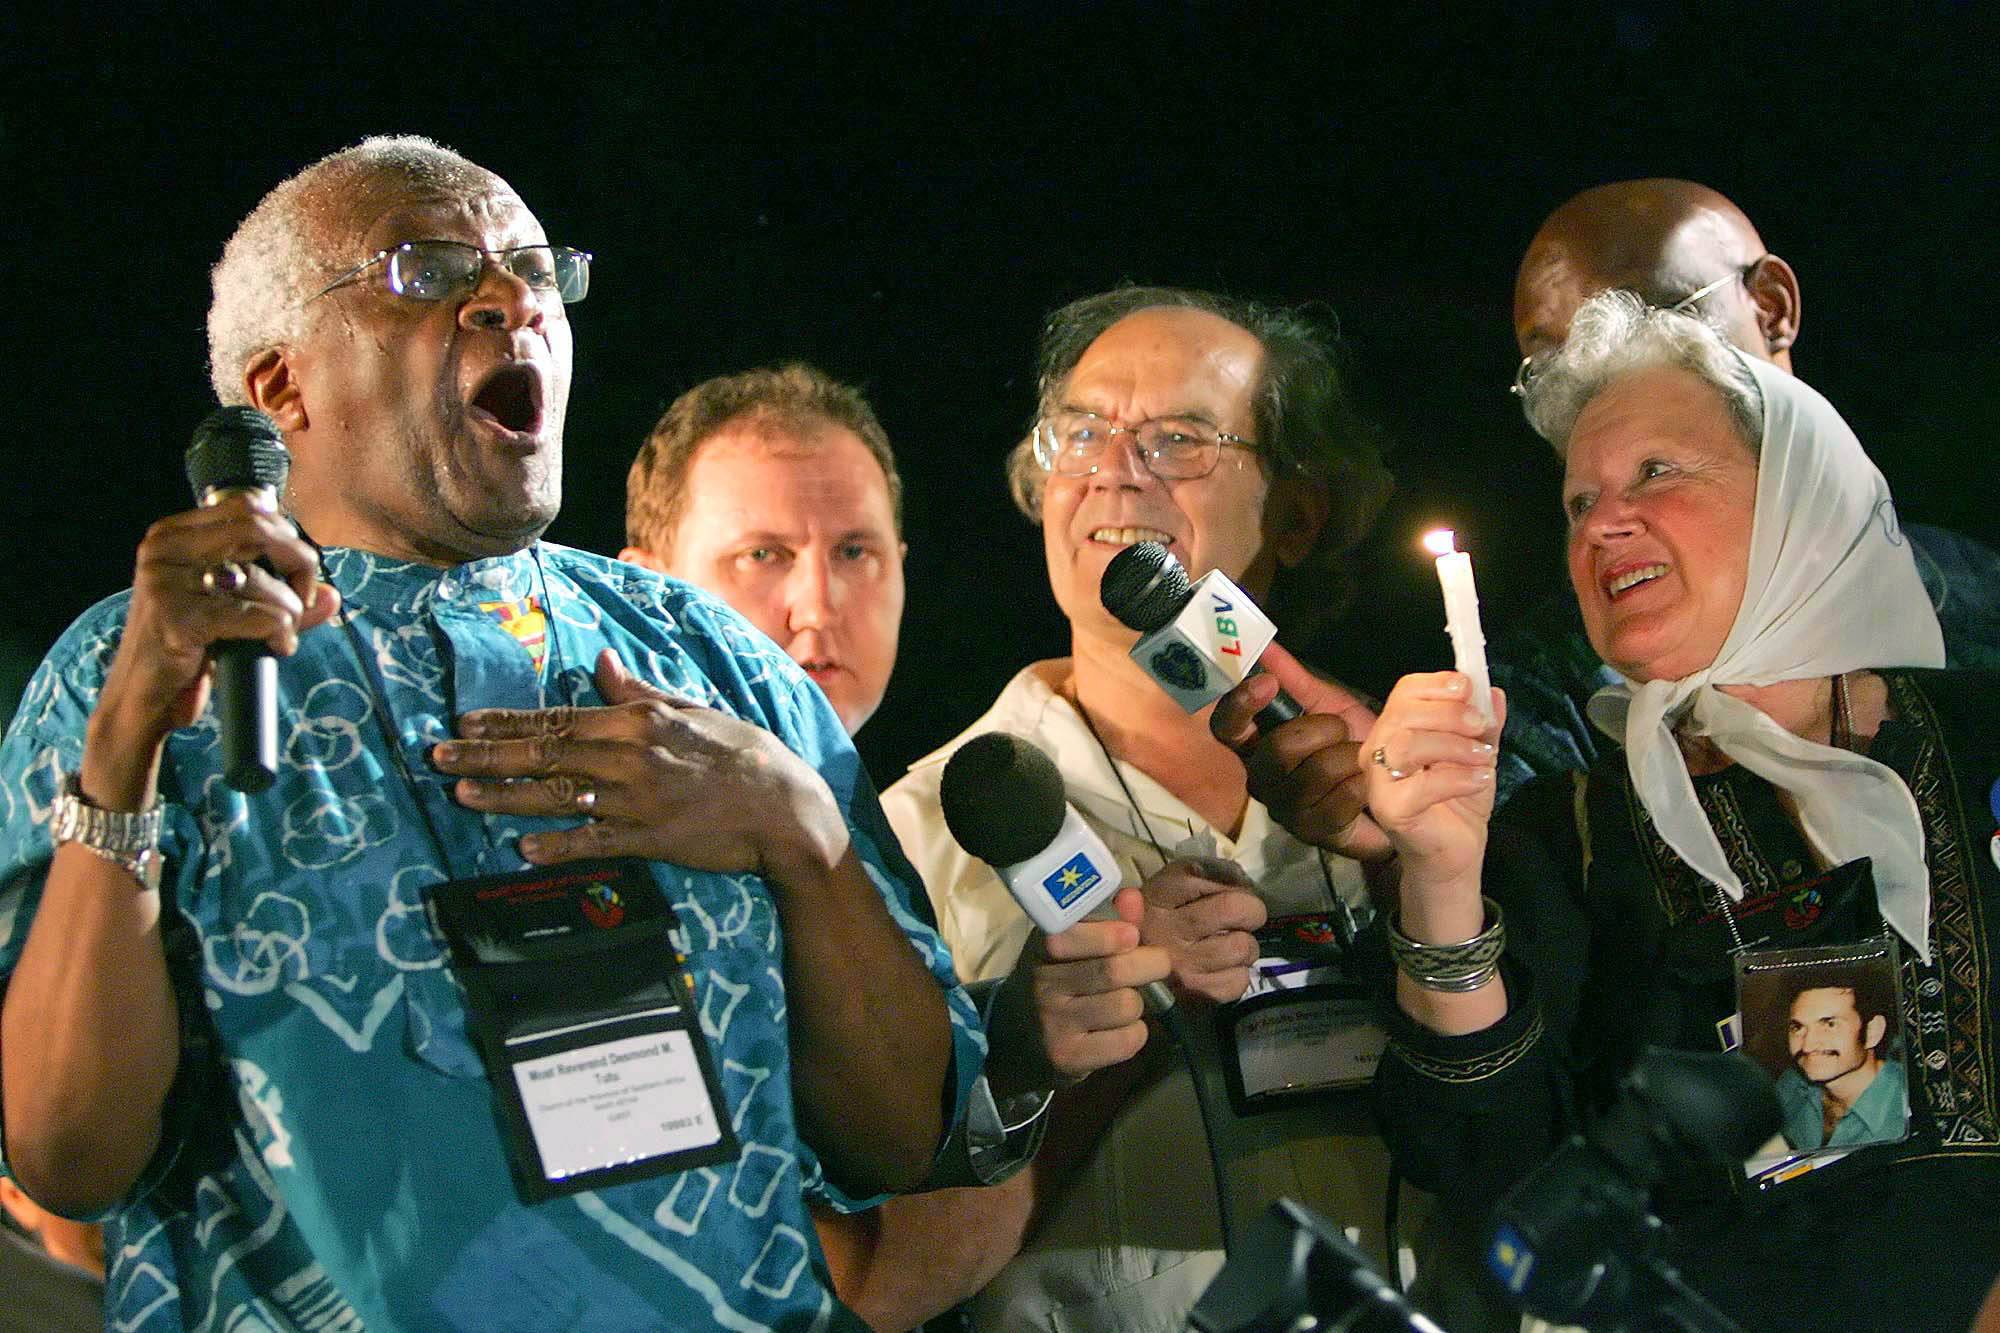 Murió Desmond Tutu, símbolo inspirador de la lucha contra el apartheid en Sudáfrica